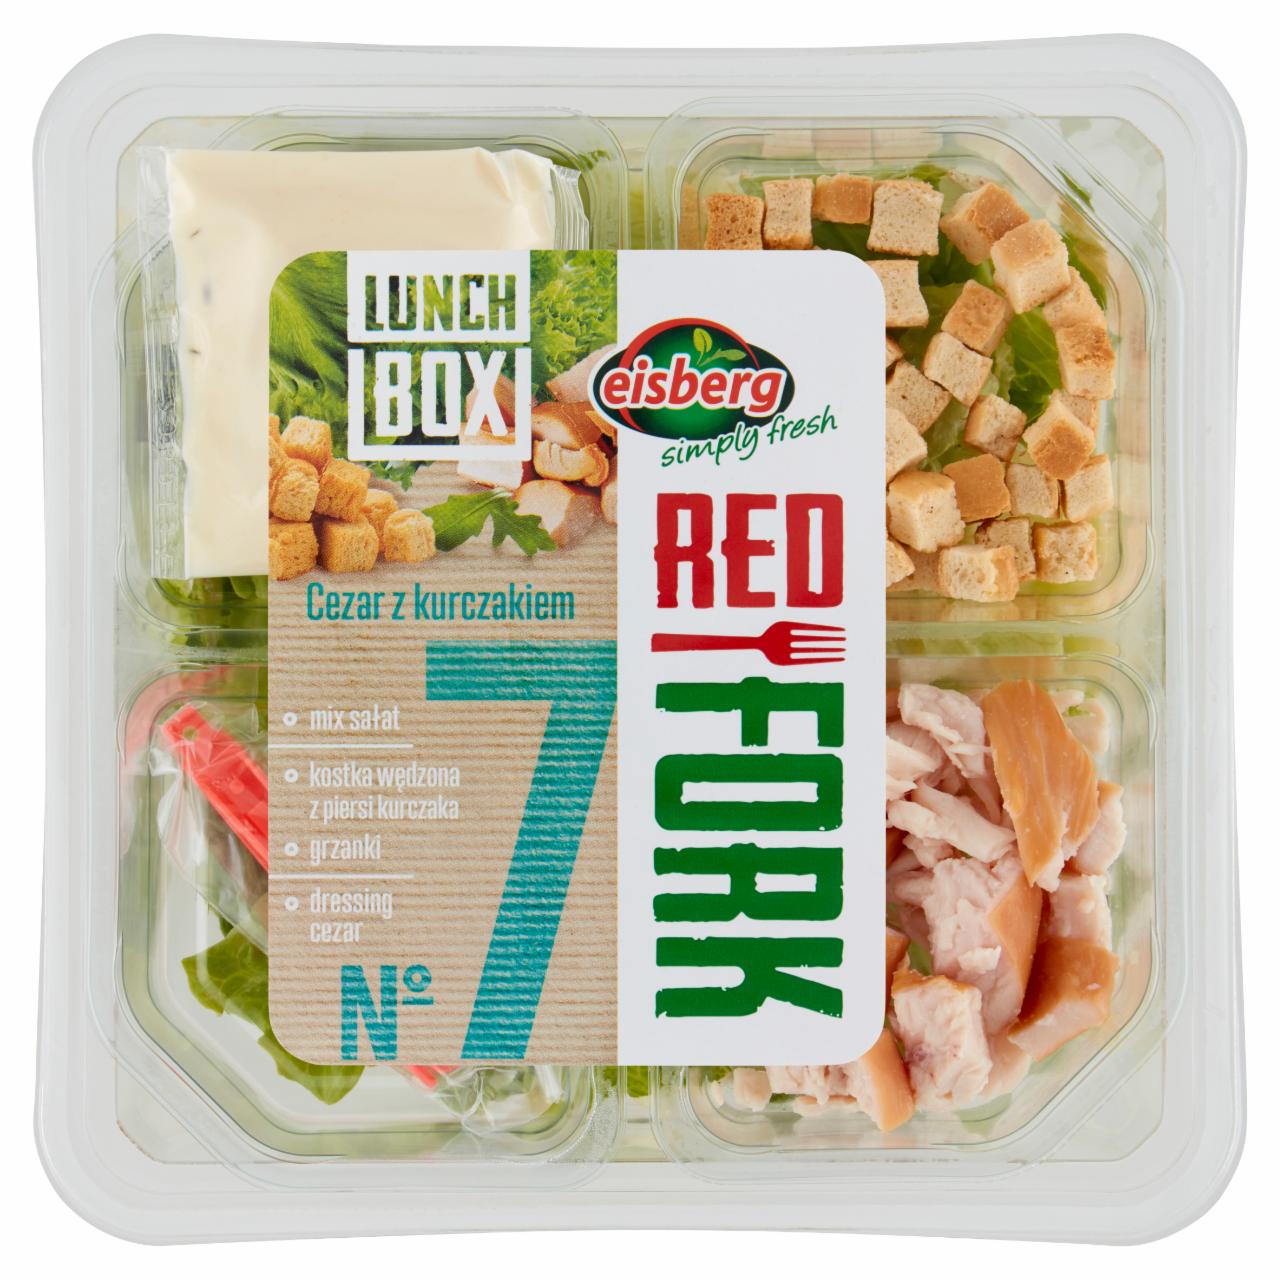 Zdjęcia - Eisberg Red Fork Lunch Box No 7 Sałatka cezar z kurczakiem 140 g